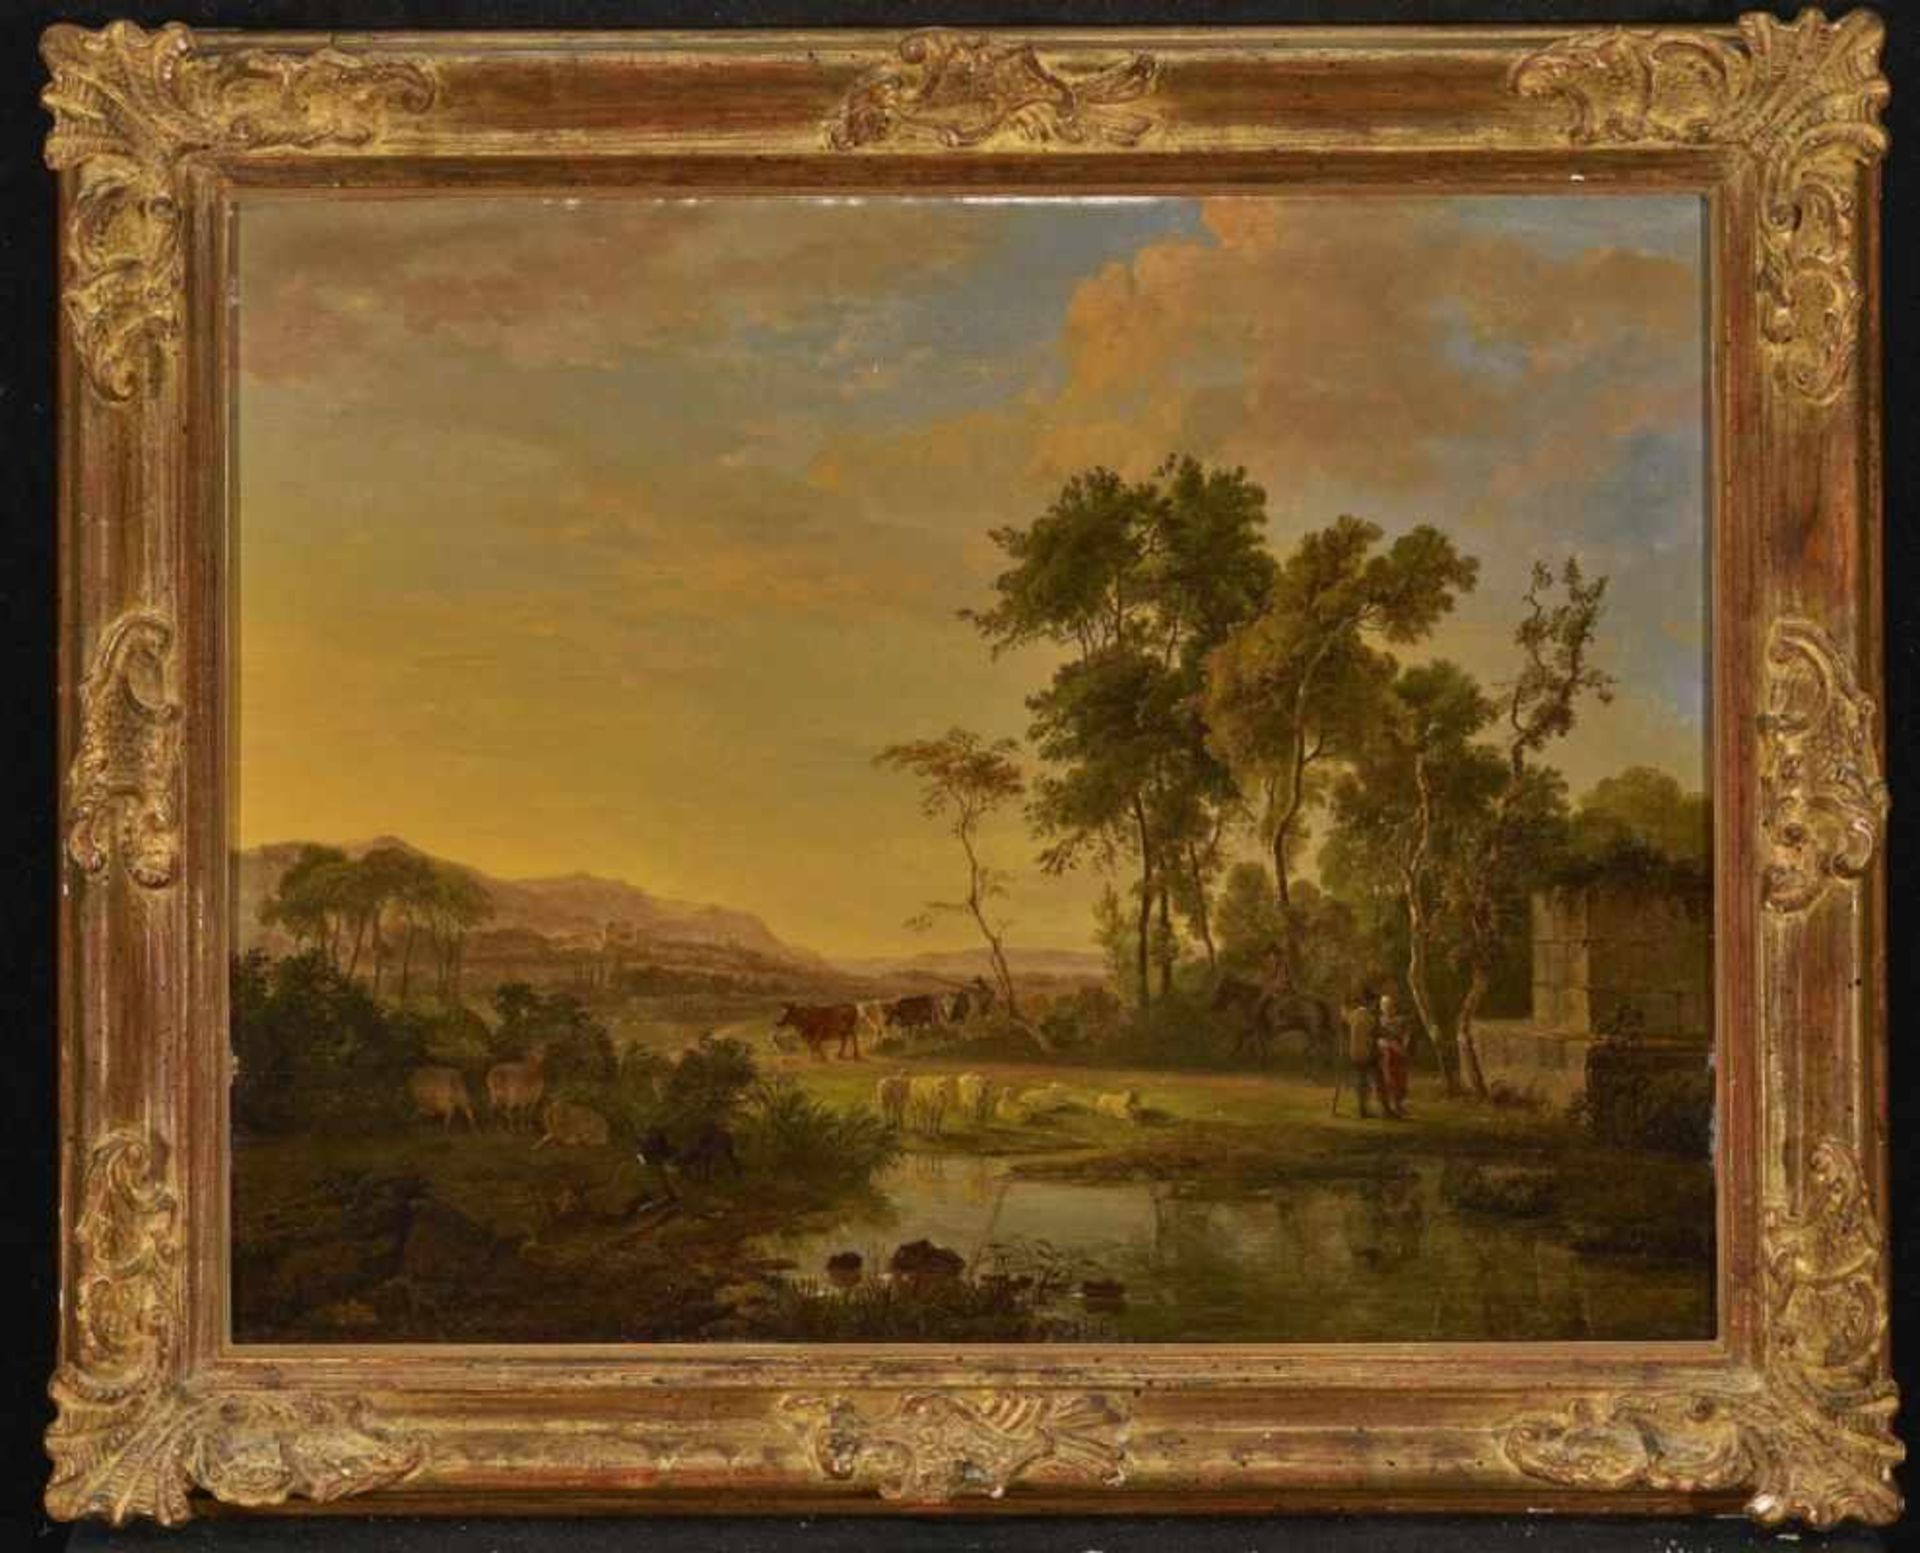 HACCOU, JOHANNES CORNELIS 1798 Middelburg - 1839 London Südliche Landschaft mit Hirten und Vieh L. - Bild 2 aus 2